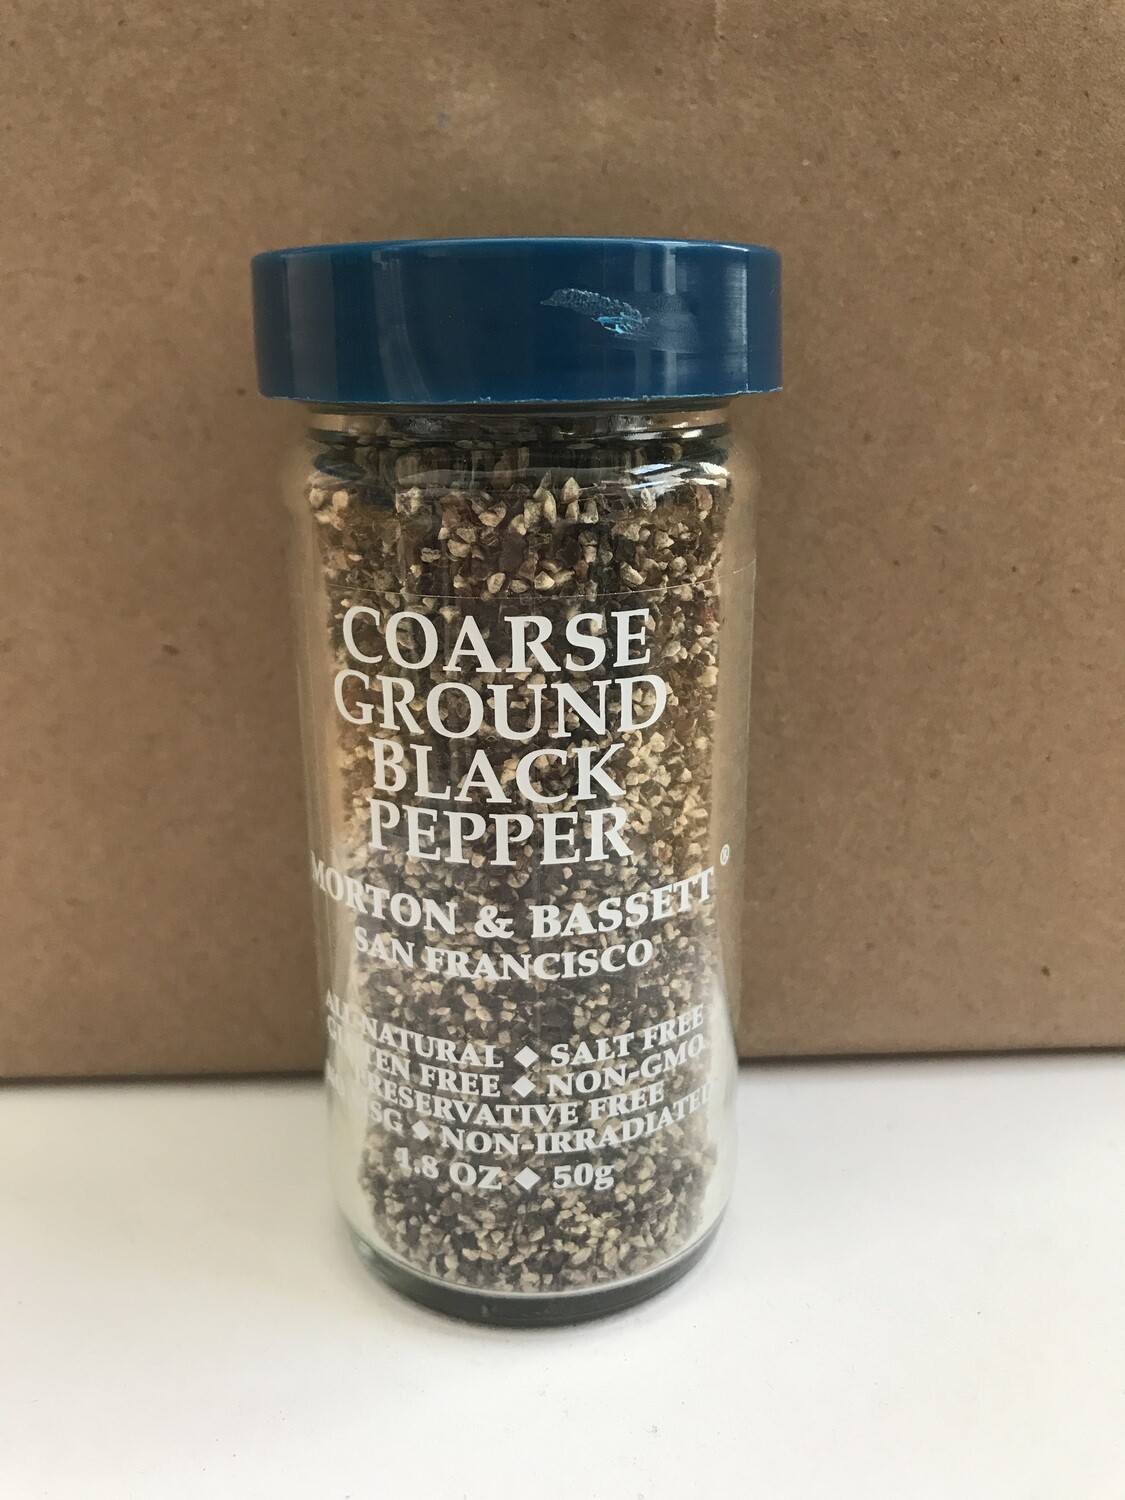 Grocery / Spice / Morton & Bassett Pepper Black Coarse Ground, 1.8 oz